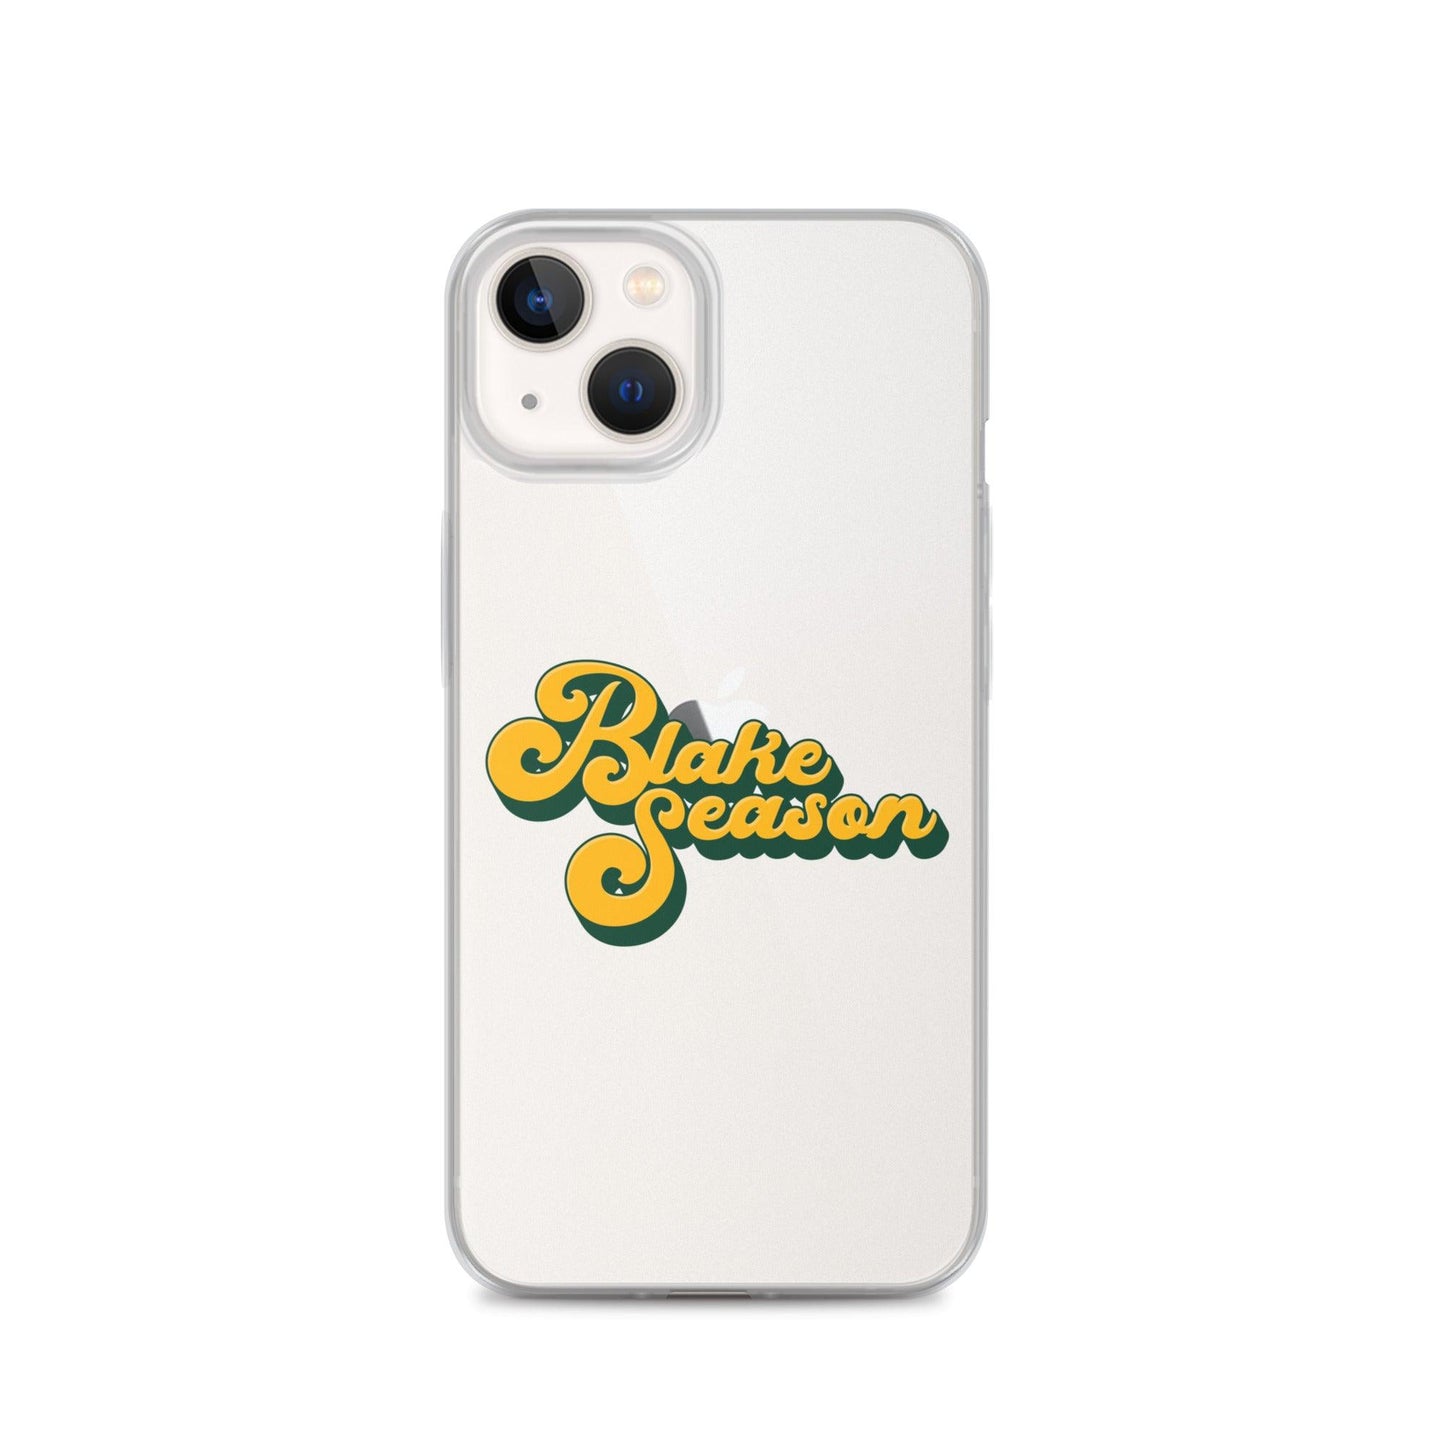 Blake Shapen “Blake Season” iPhone Case - Fan Arch